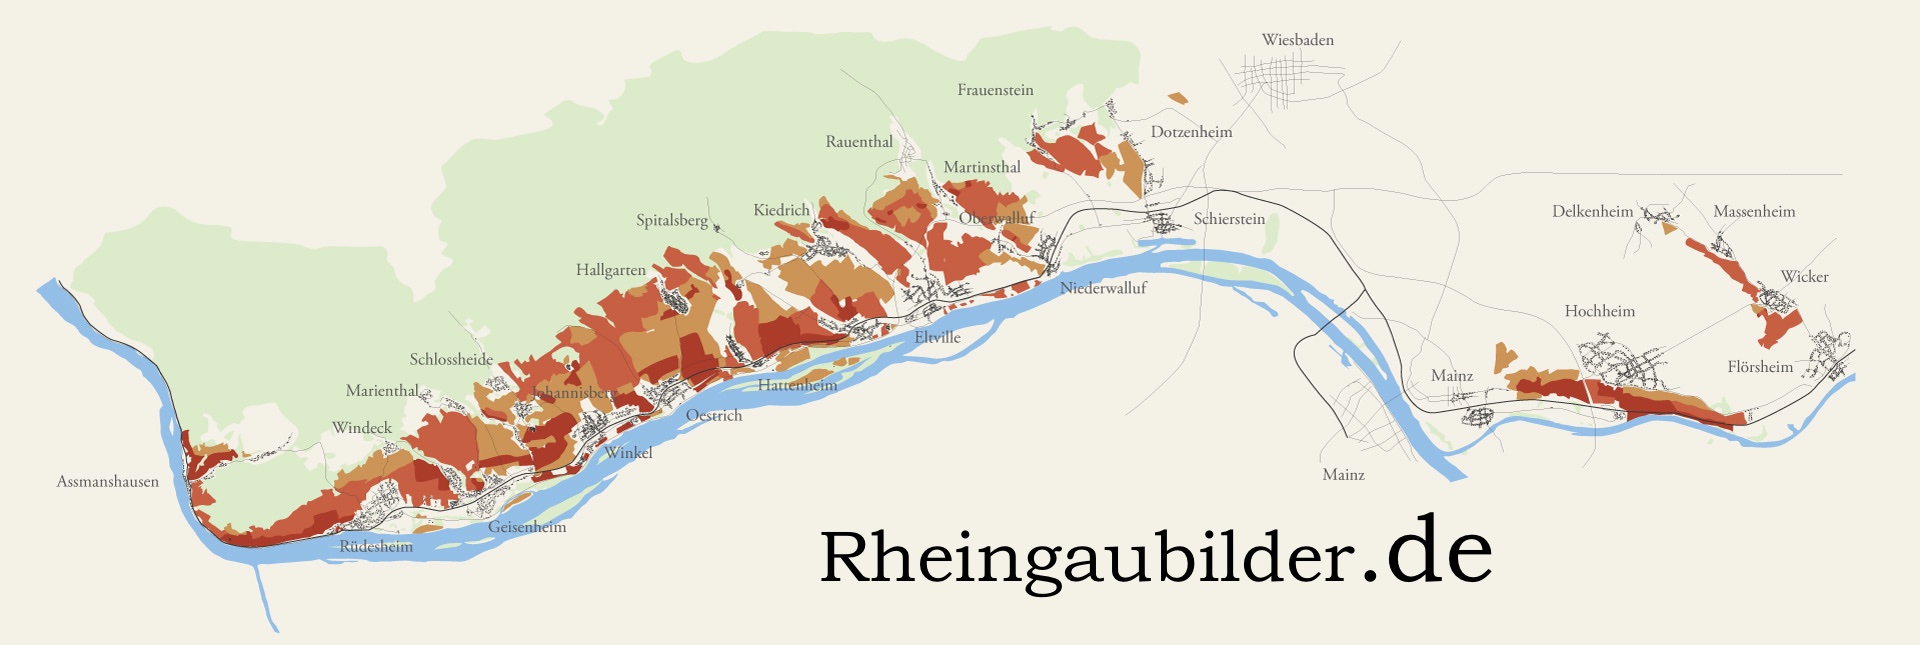 Rheingaubilder